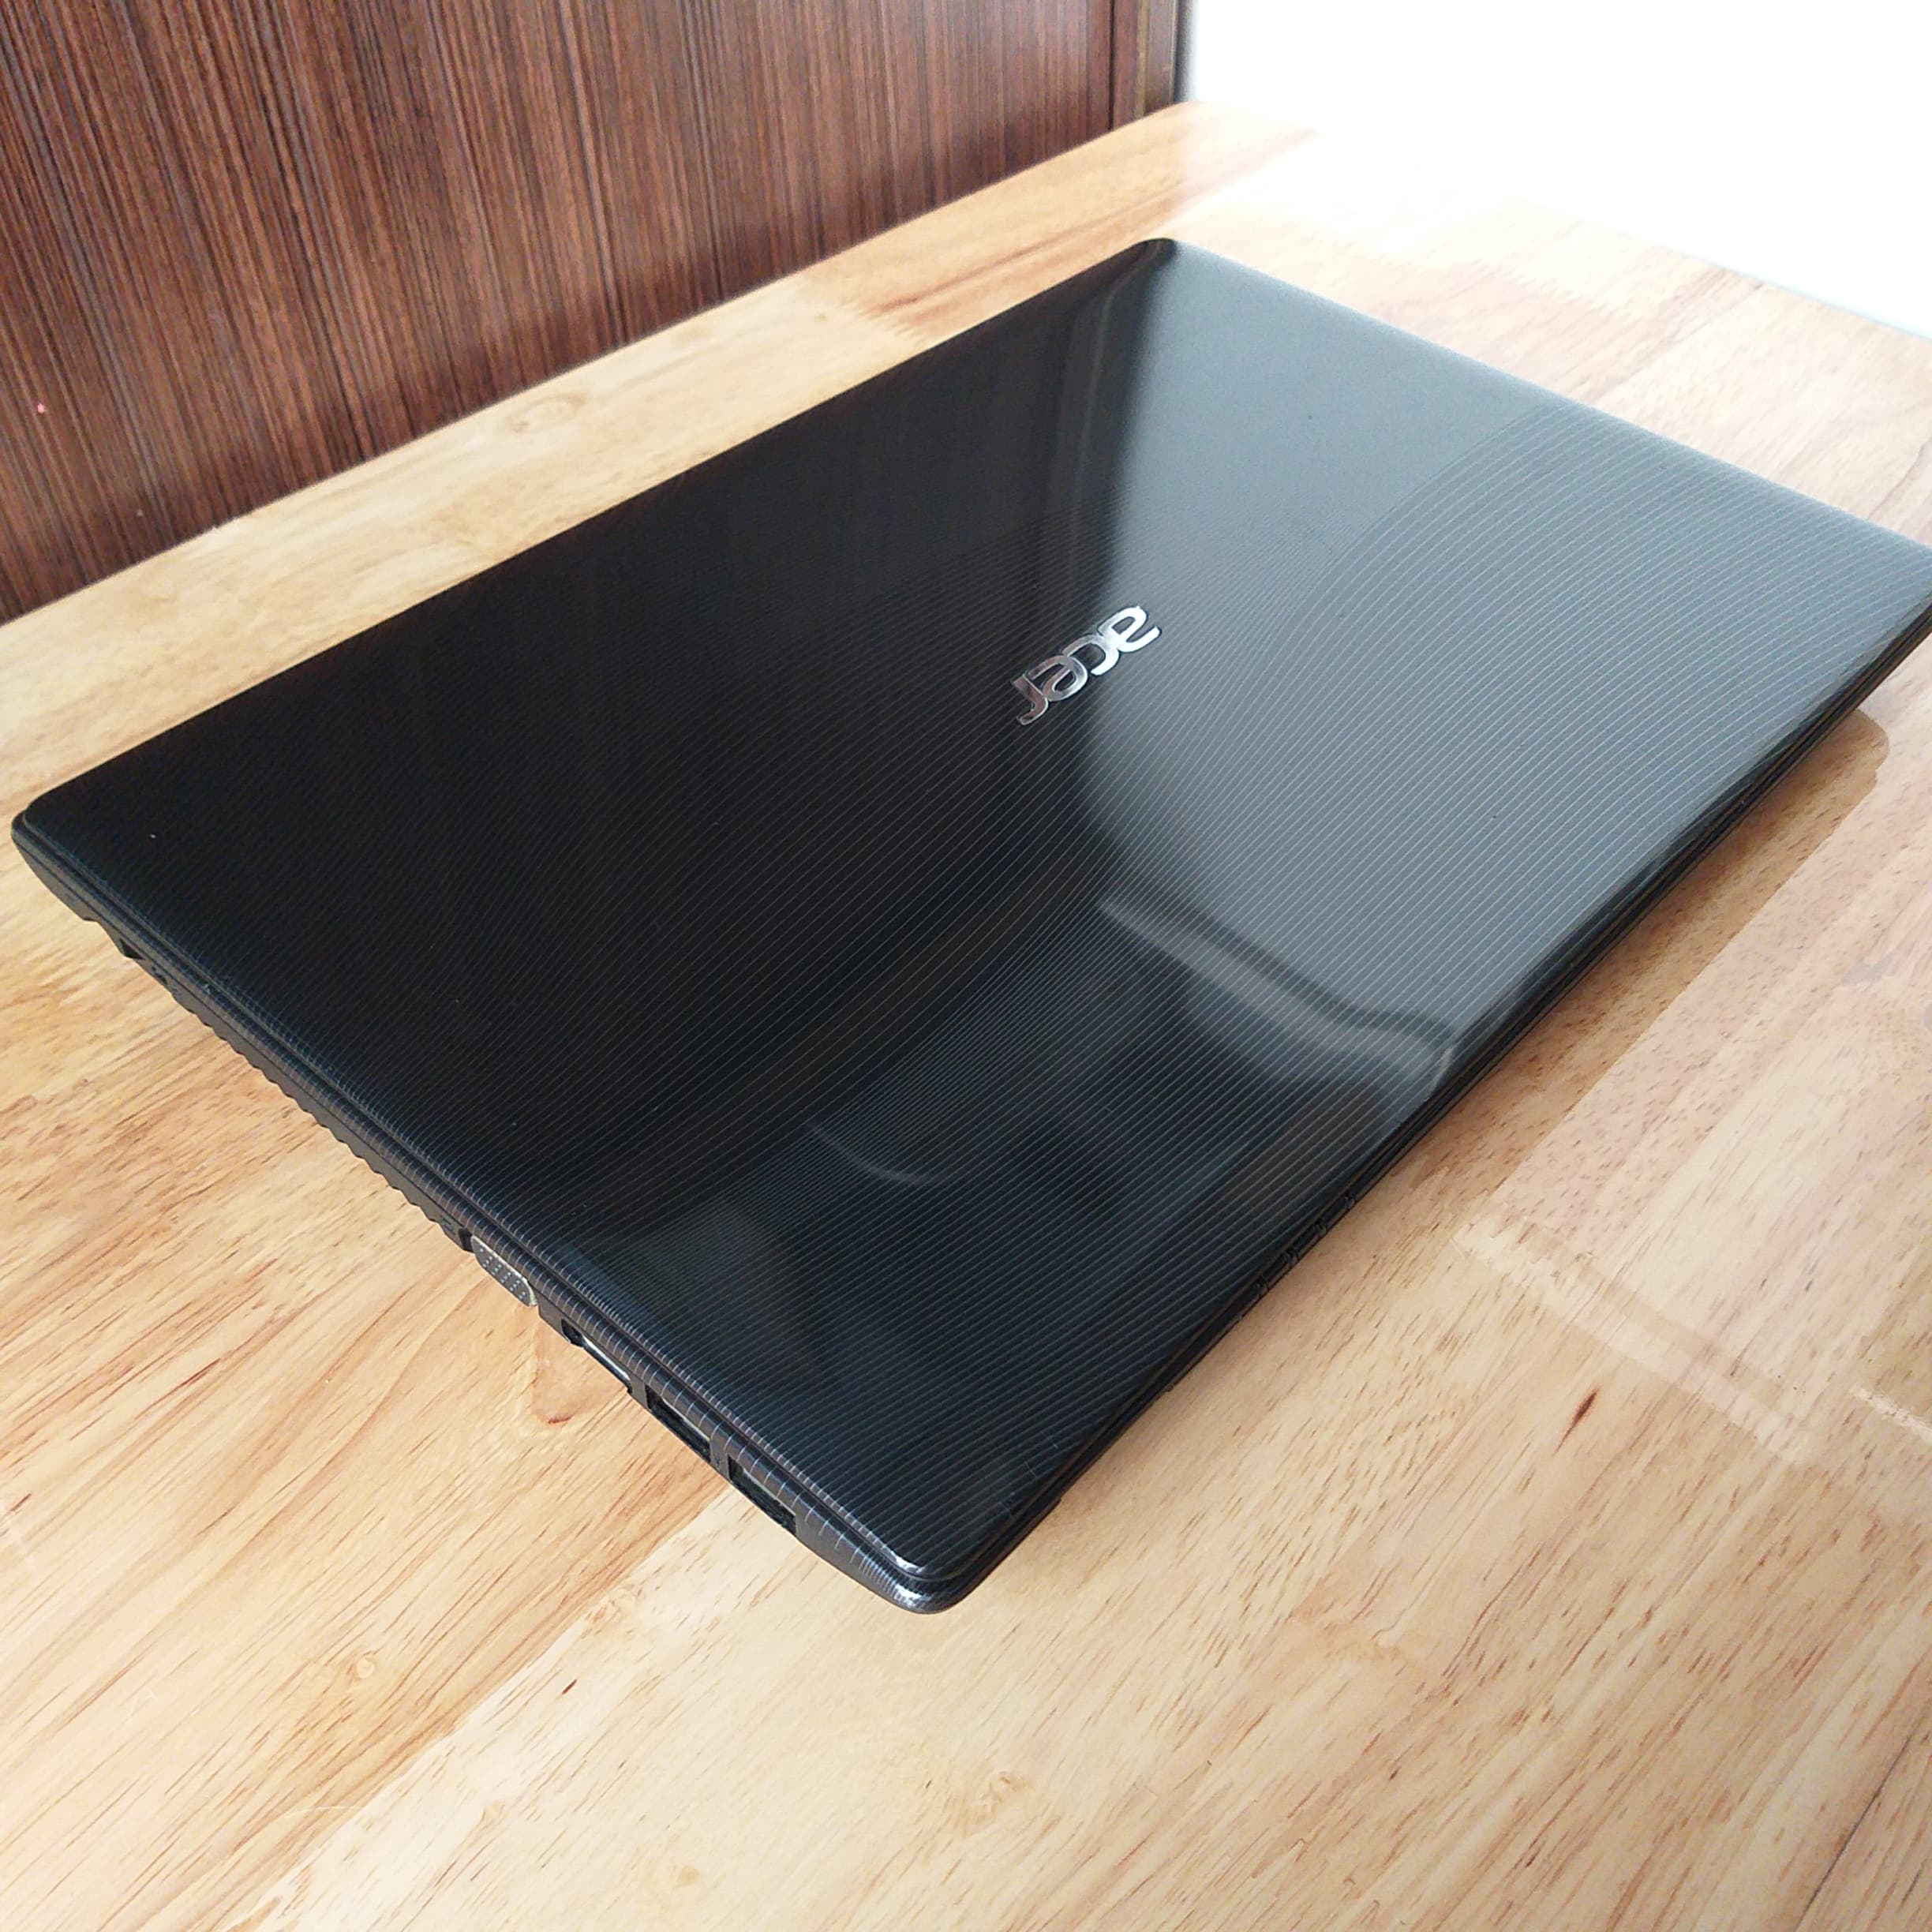 Laptop Acer Aspire 4752, I5 2430M RAM 4GB HDD 500GB